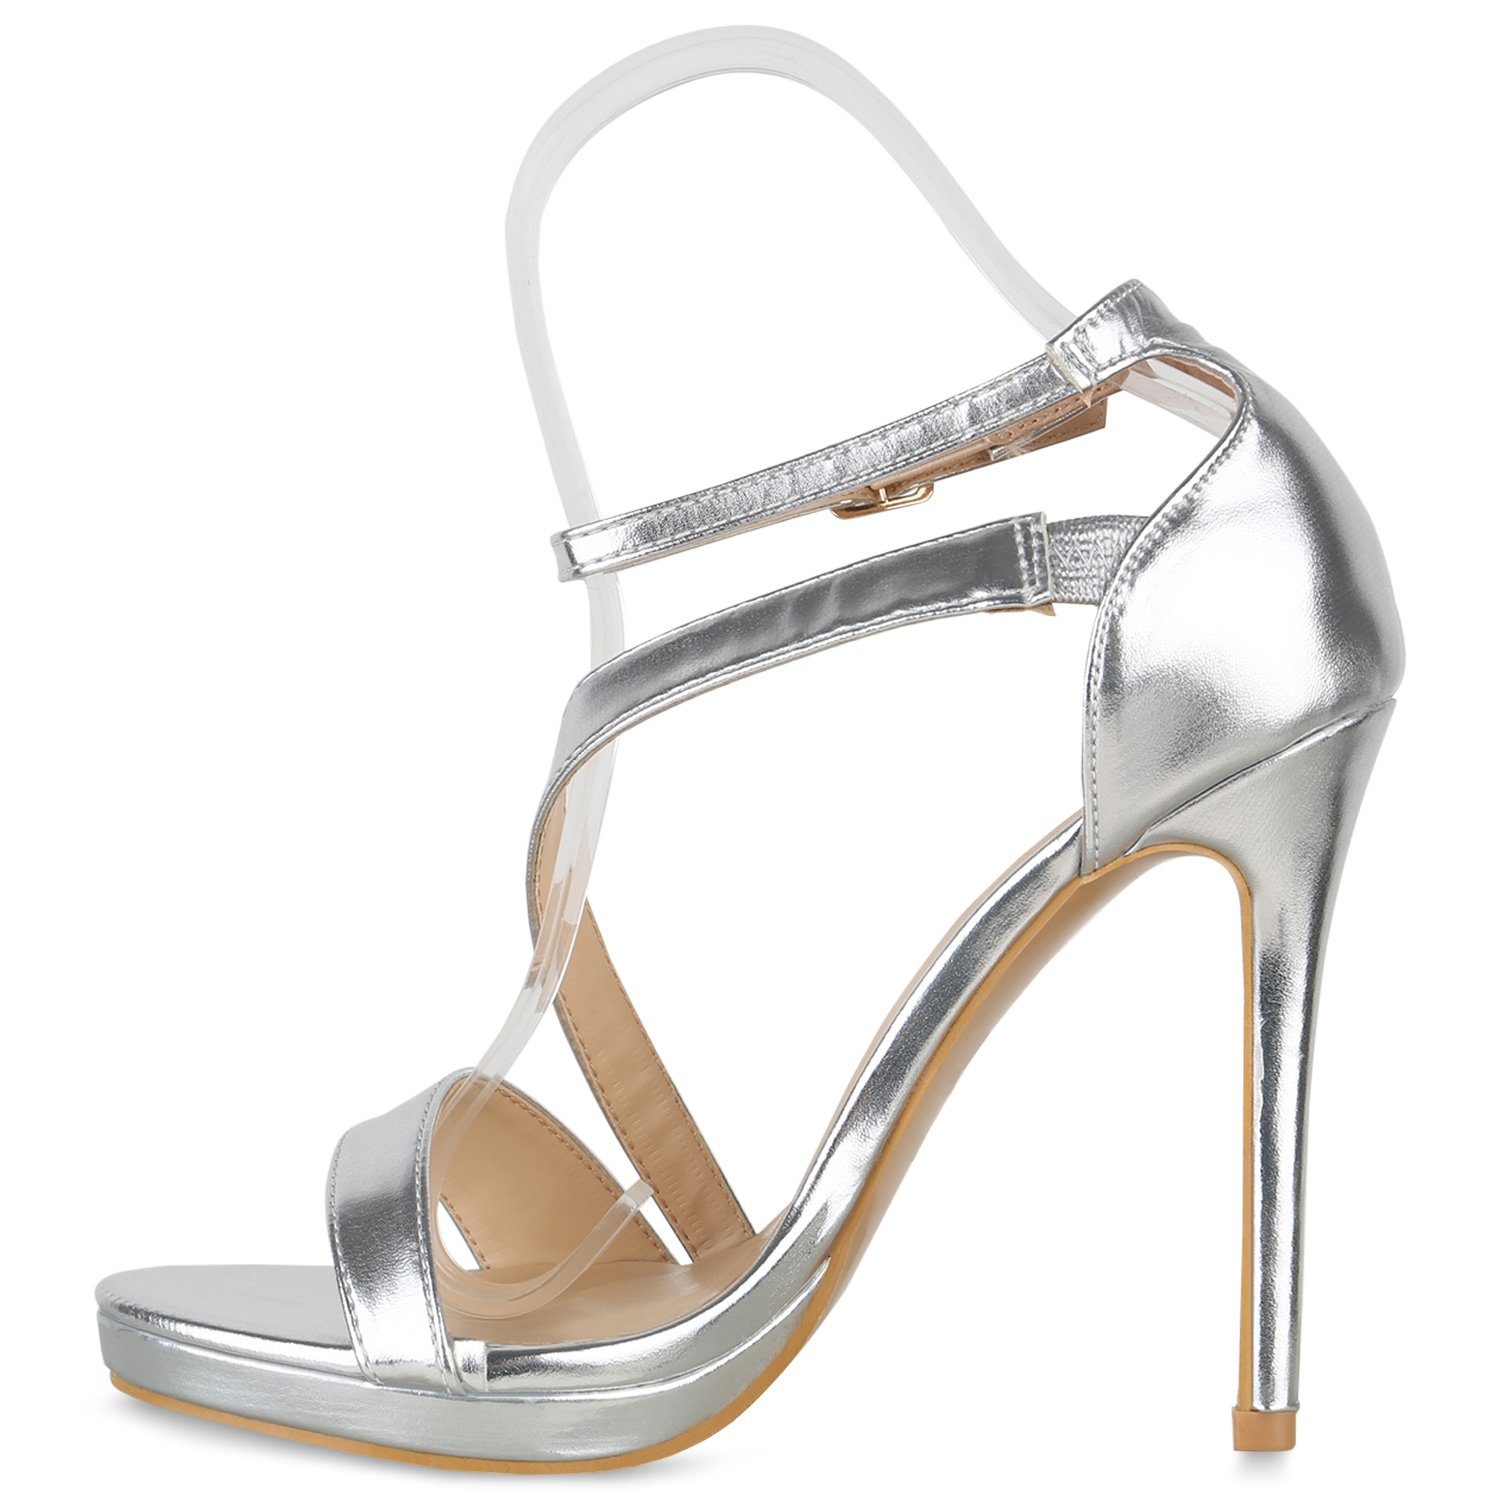 VAN HILL Bequeme High-Heel-Sandalette 840096 Schuhe Silber